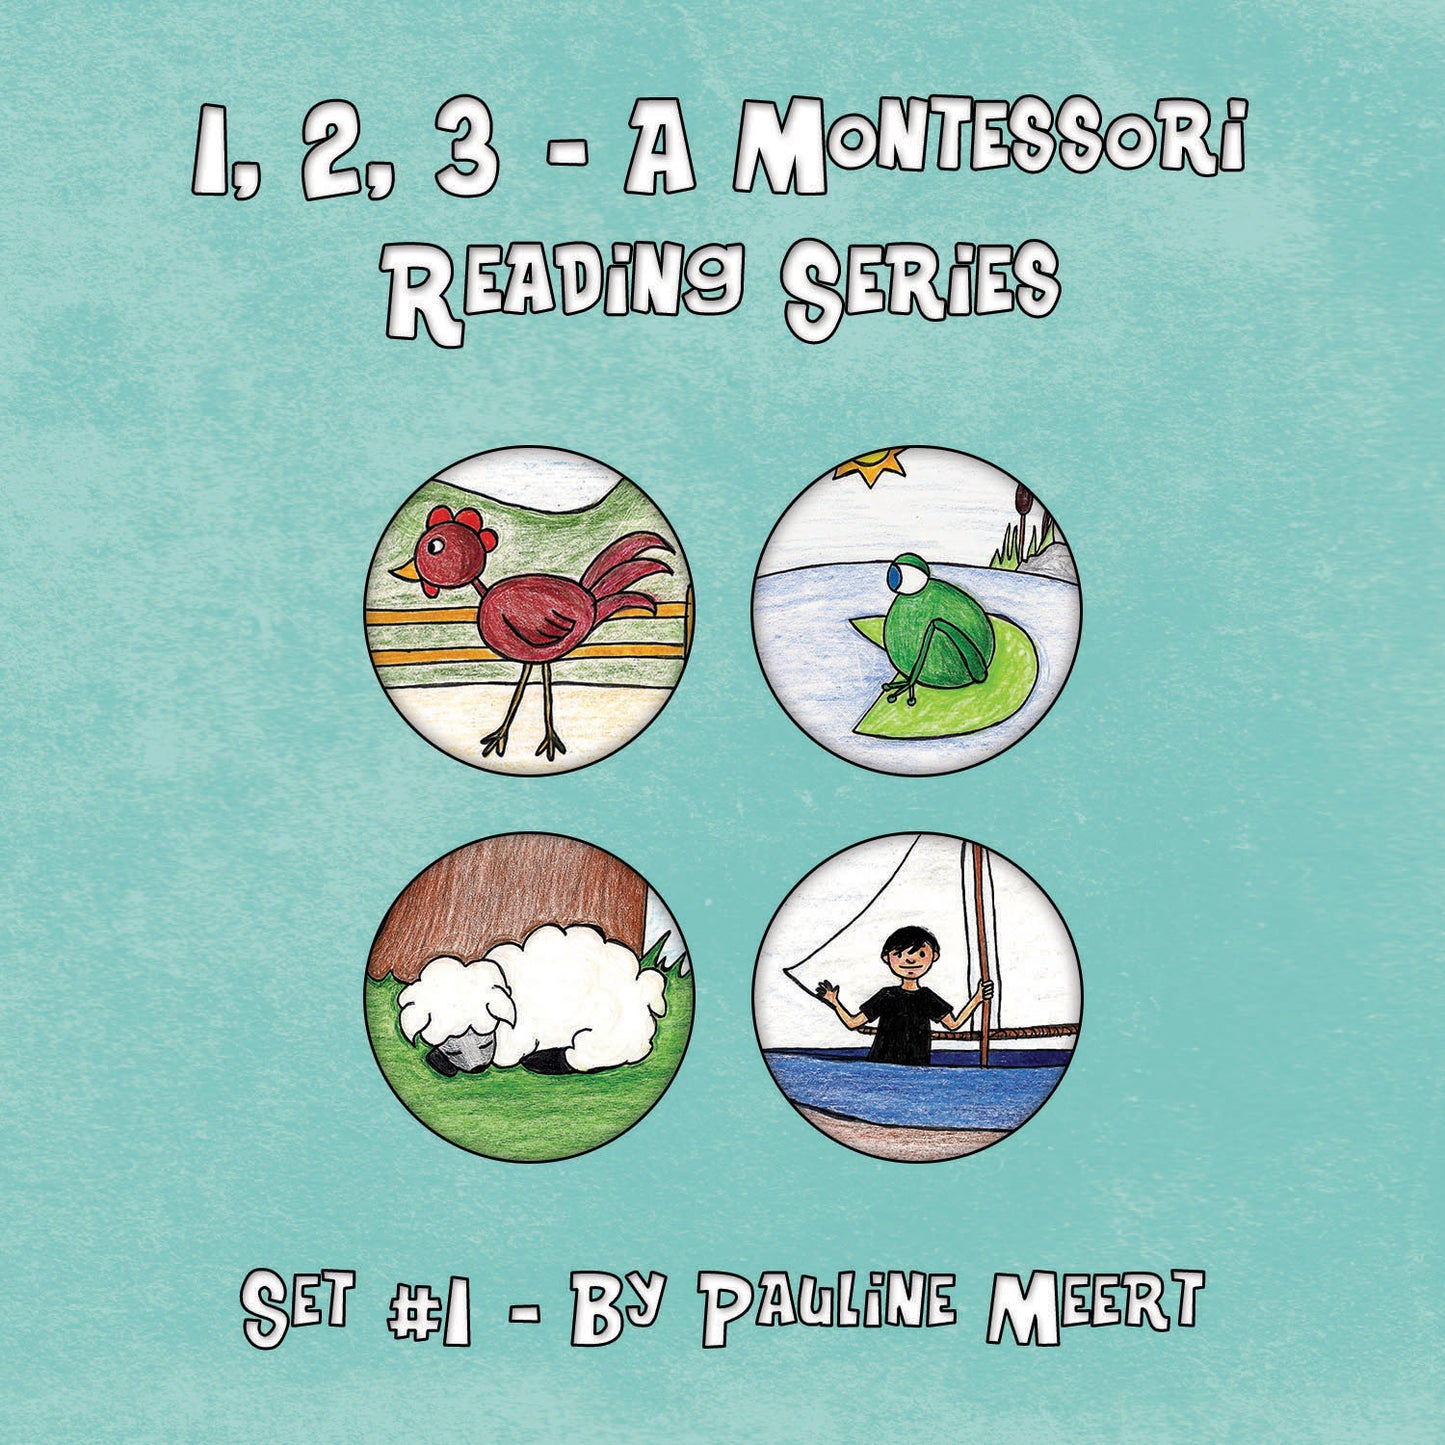 1, 2, 3 - A Montessori Reading Book Series